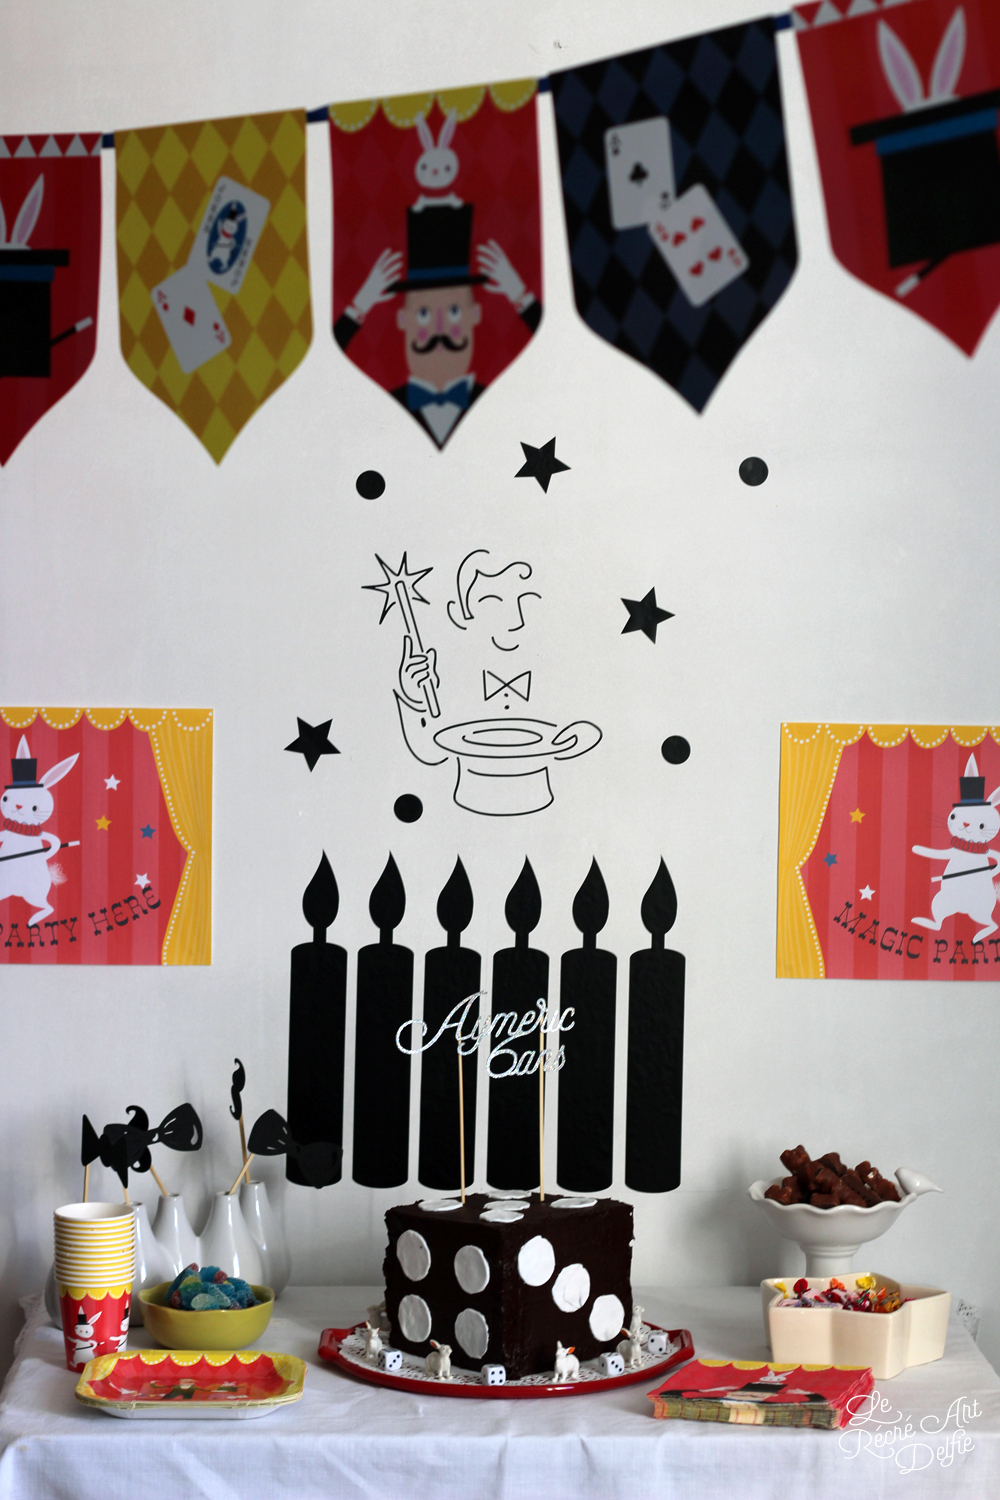 Baguette de magicien - baguette magique - Fête enfants thème Magie